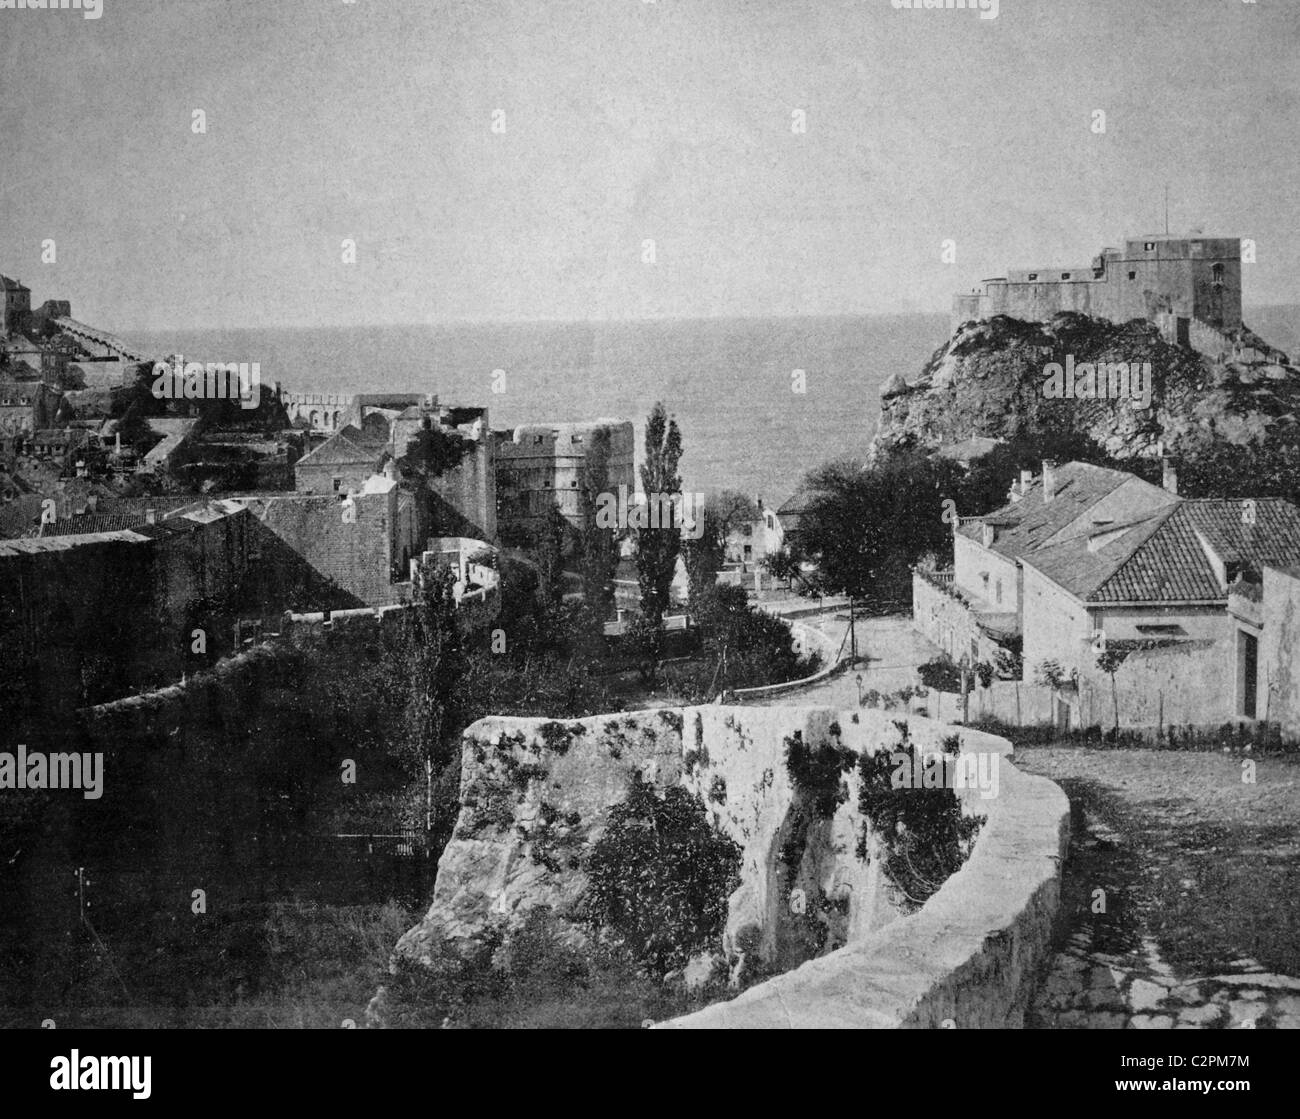 Début d'Autotype Ragusa, Dalmatie, tableau historique, 1884 Banque D'Images